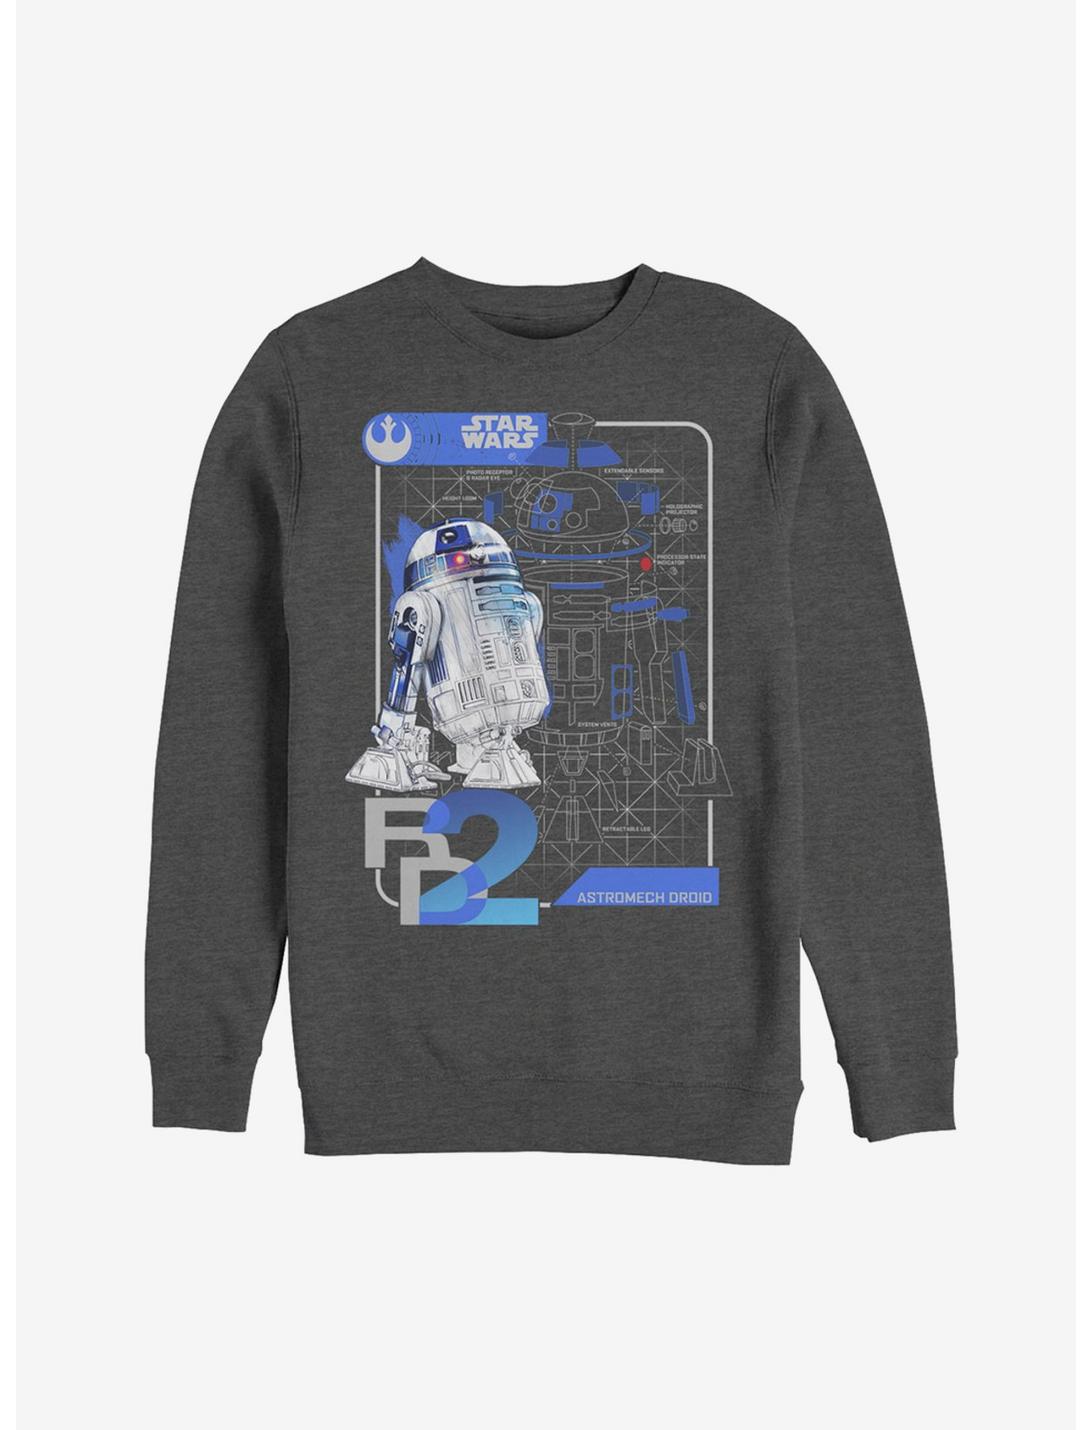 Star Wars R2-D2 Schematics Sweatshirt, CHAR HTR, hi-res